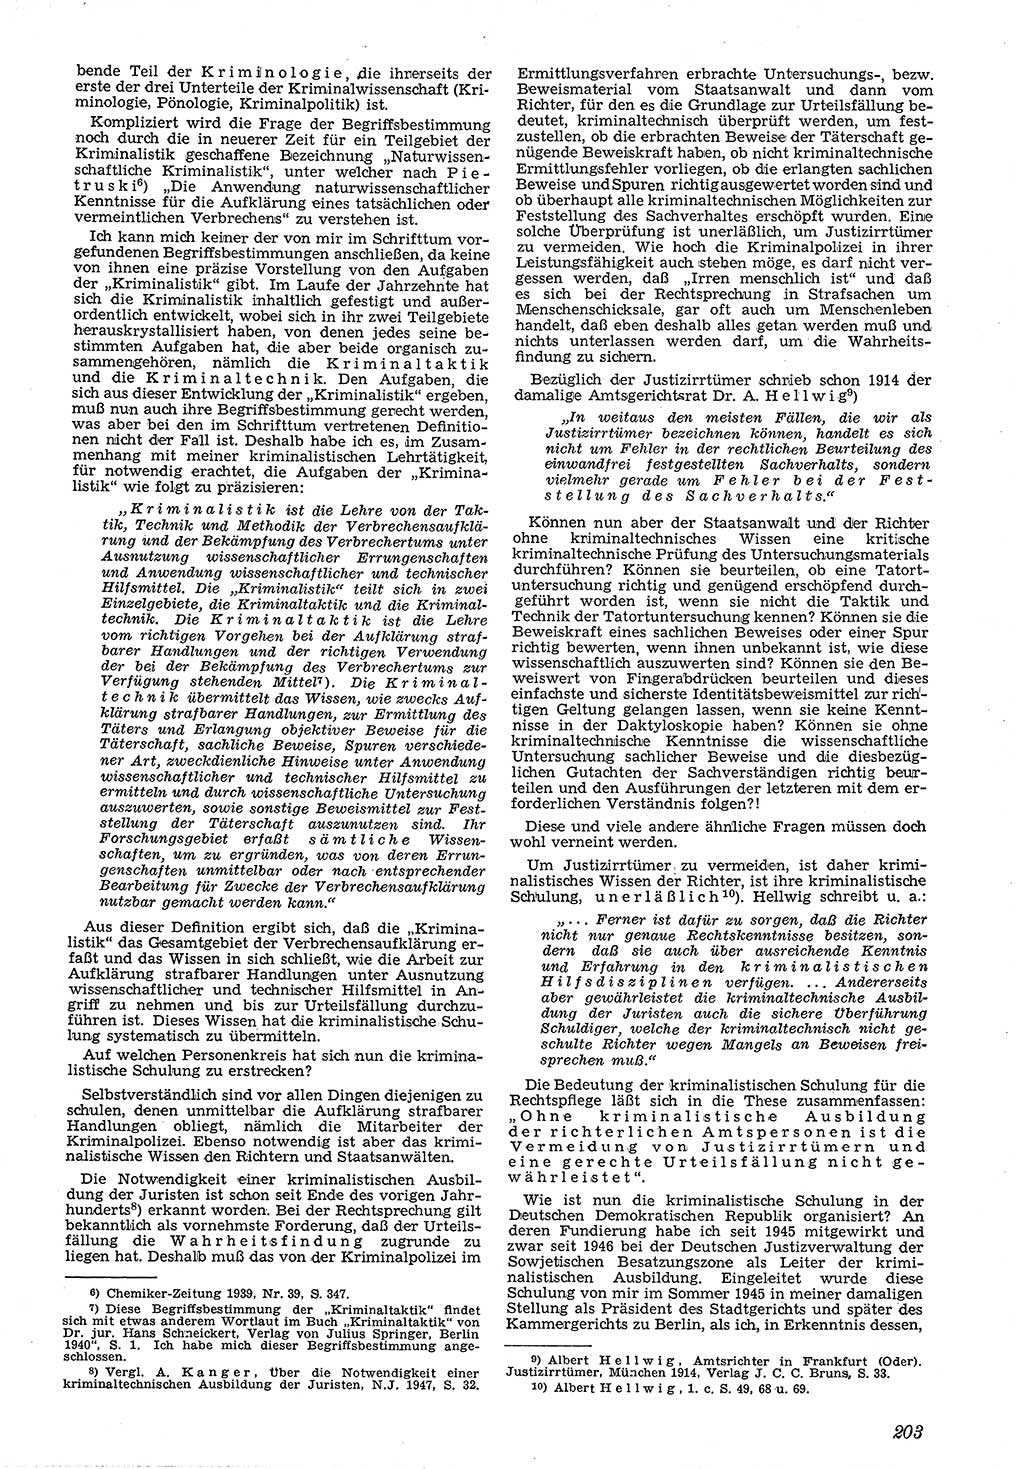 Neue Justiz (NJ), Zeitschrift für Recht und Rechtswissenschaft [Deutsche Demokratische Republik (DDR)], 4. Jahrgang 1950, Seite 203 (NJ DDR 1950, S. 203)